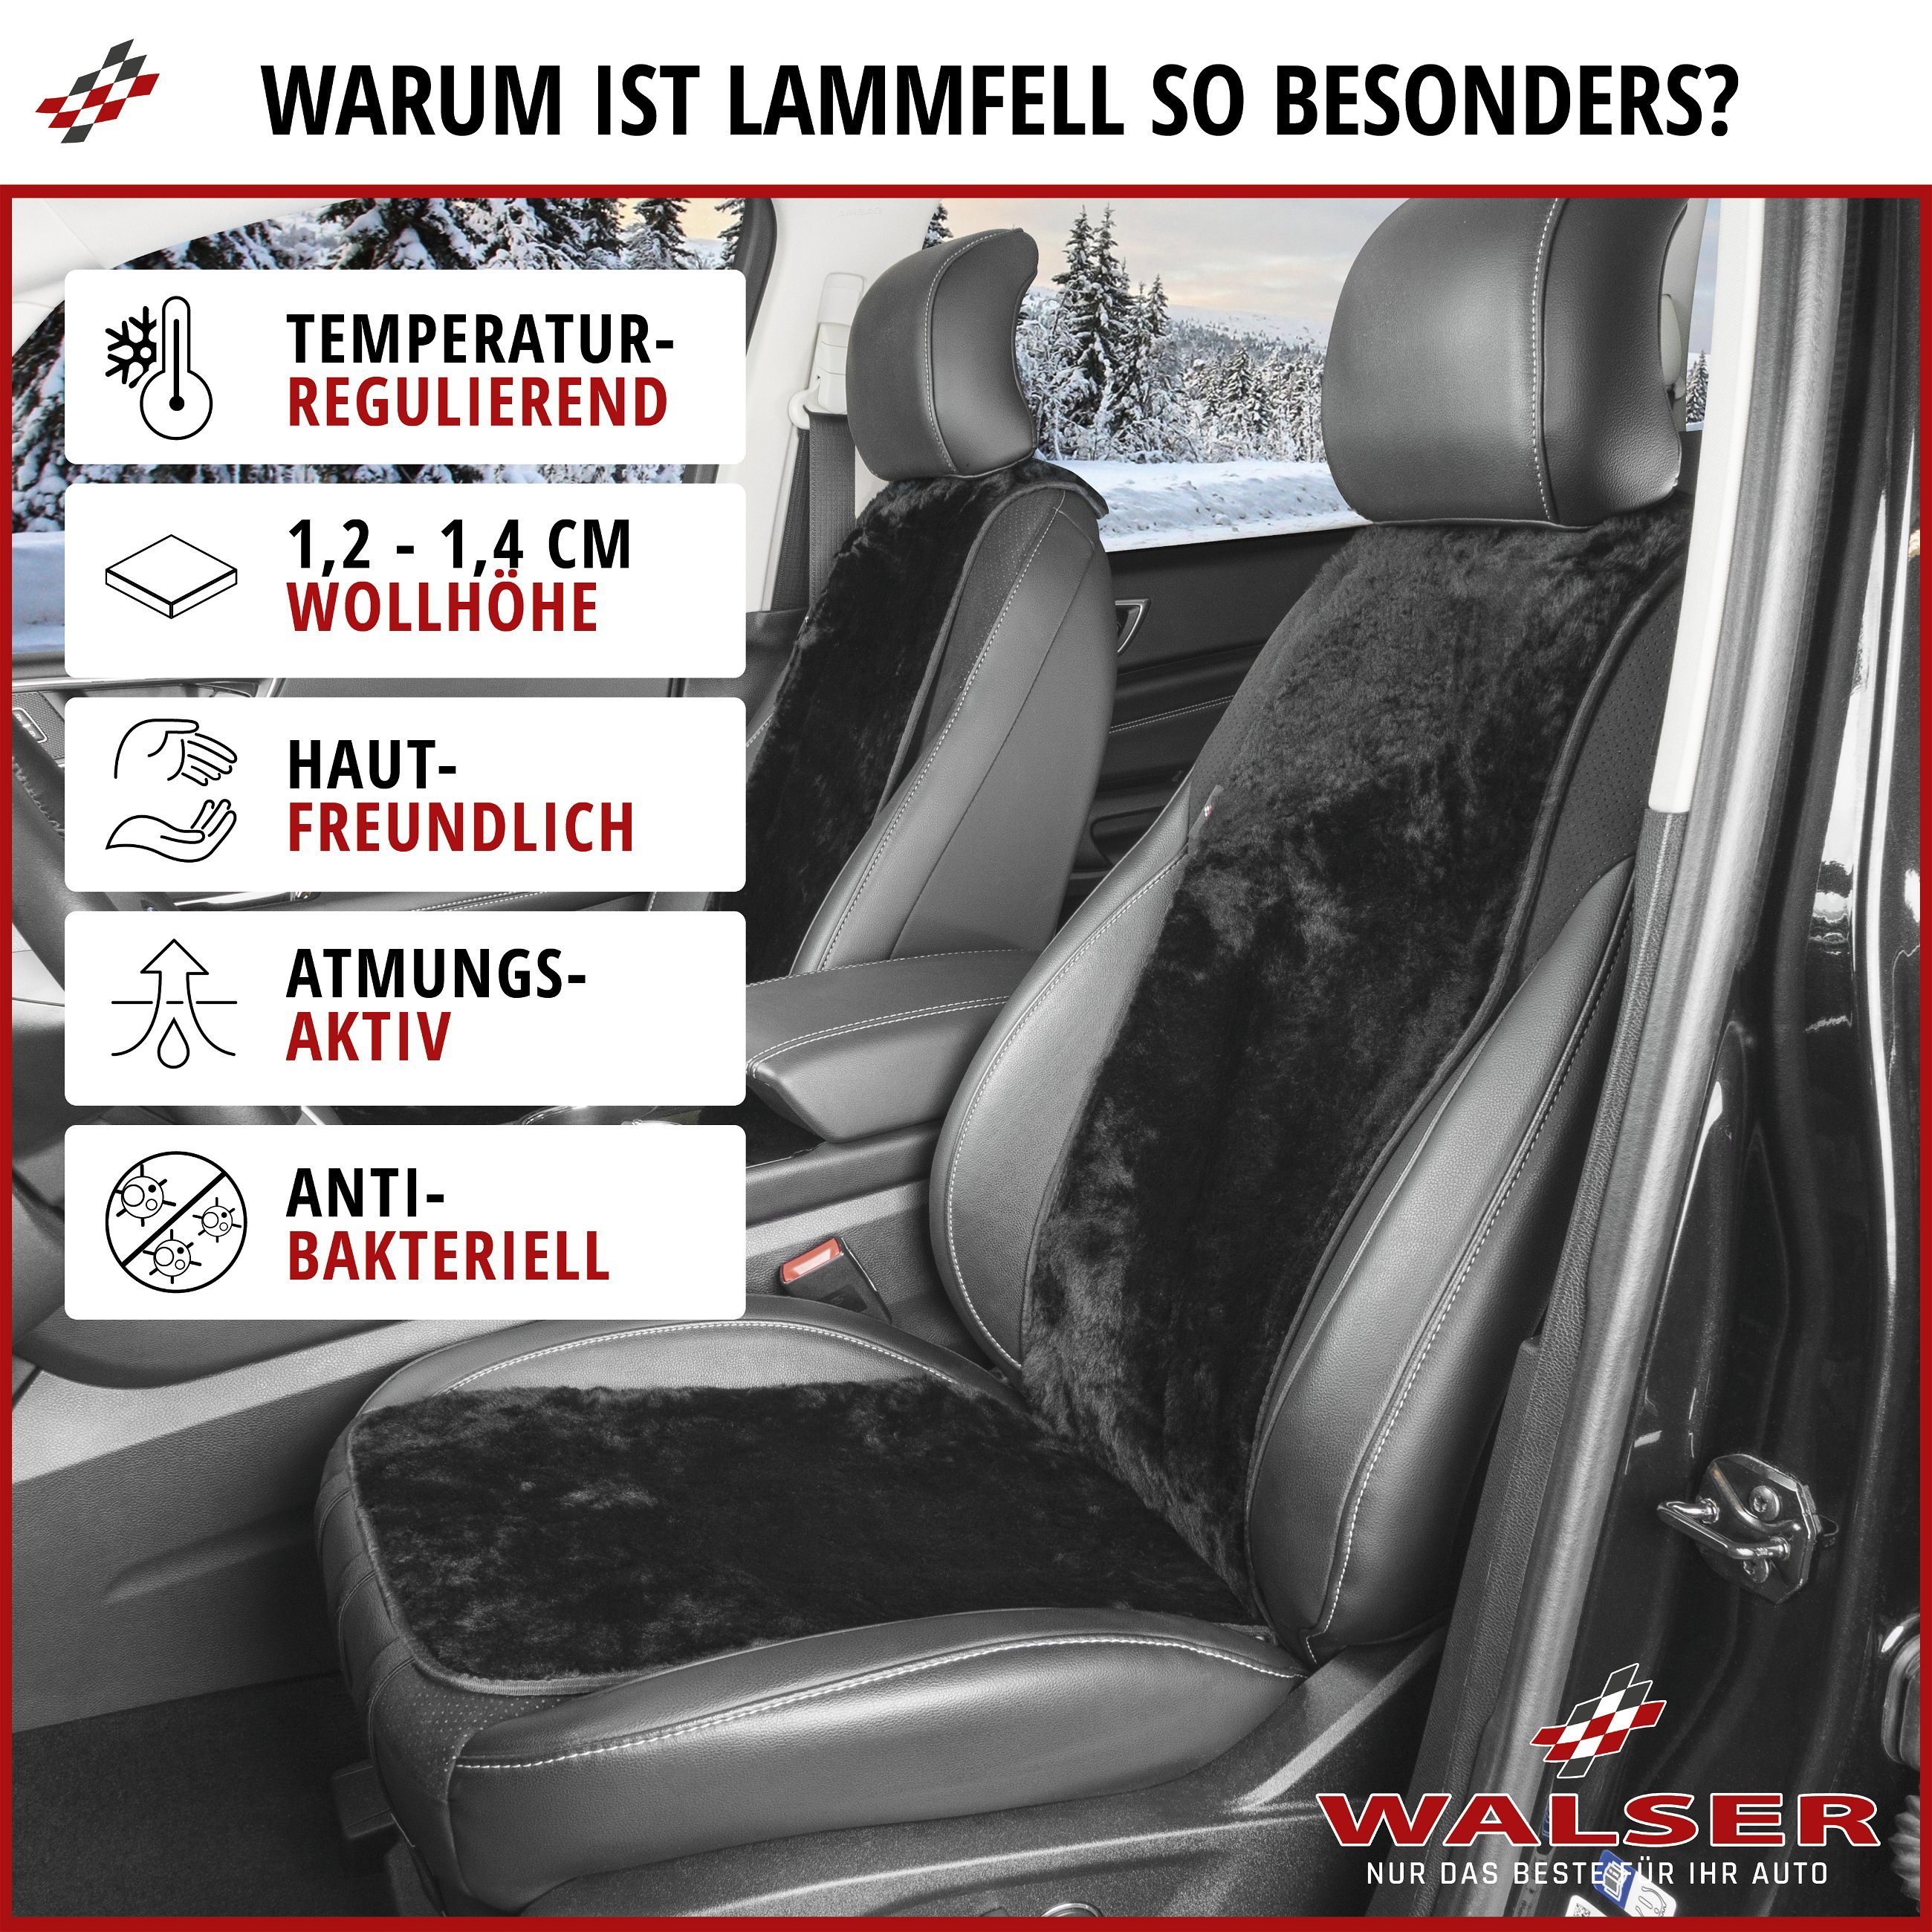 PKW Sitzauflage aus Lammfell Cosmo, Auto-Sitzaufleger, Lammfell-Sitzauflage  schwarz, PKW Sitzauflage aus Lammfell Cosmo, Auto-Sitzaufleger,  Lammfell-Sitzauflage schwarz, Sitzauflagen, Sitzbezüge und Sitzauflagen  für PKWs